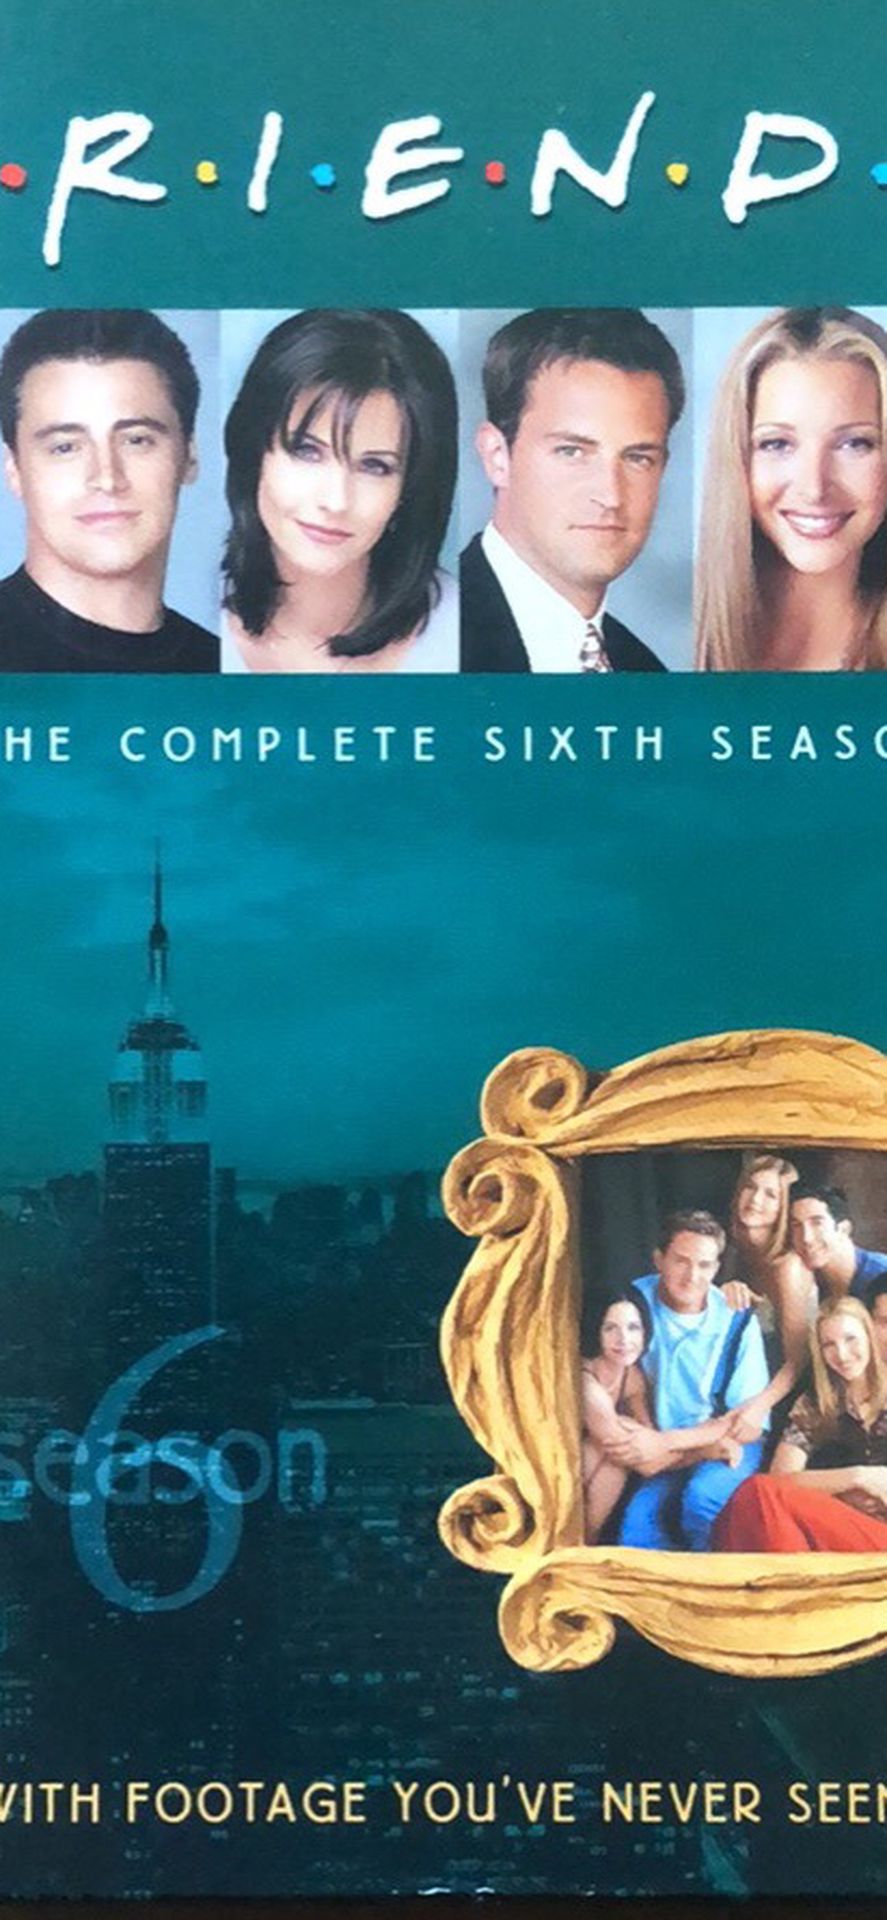 Friends Season 6 DVDs